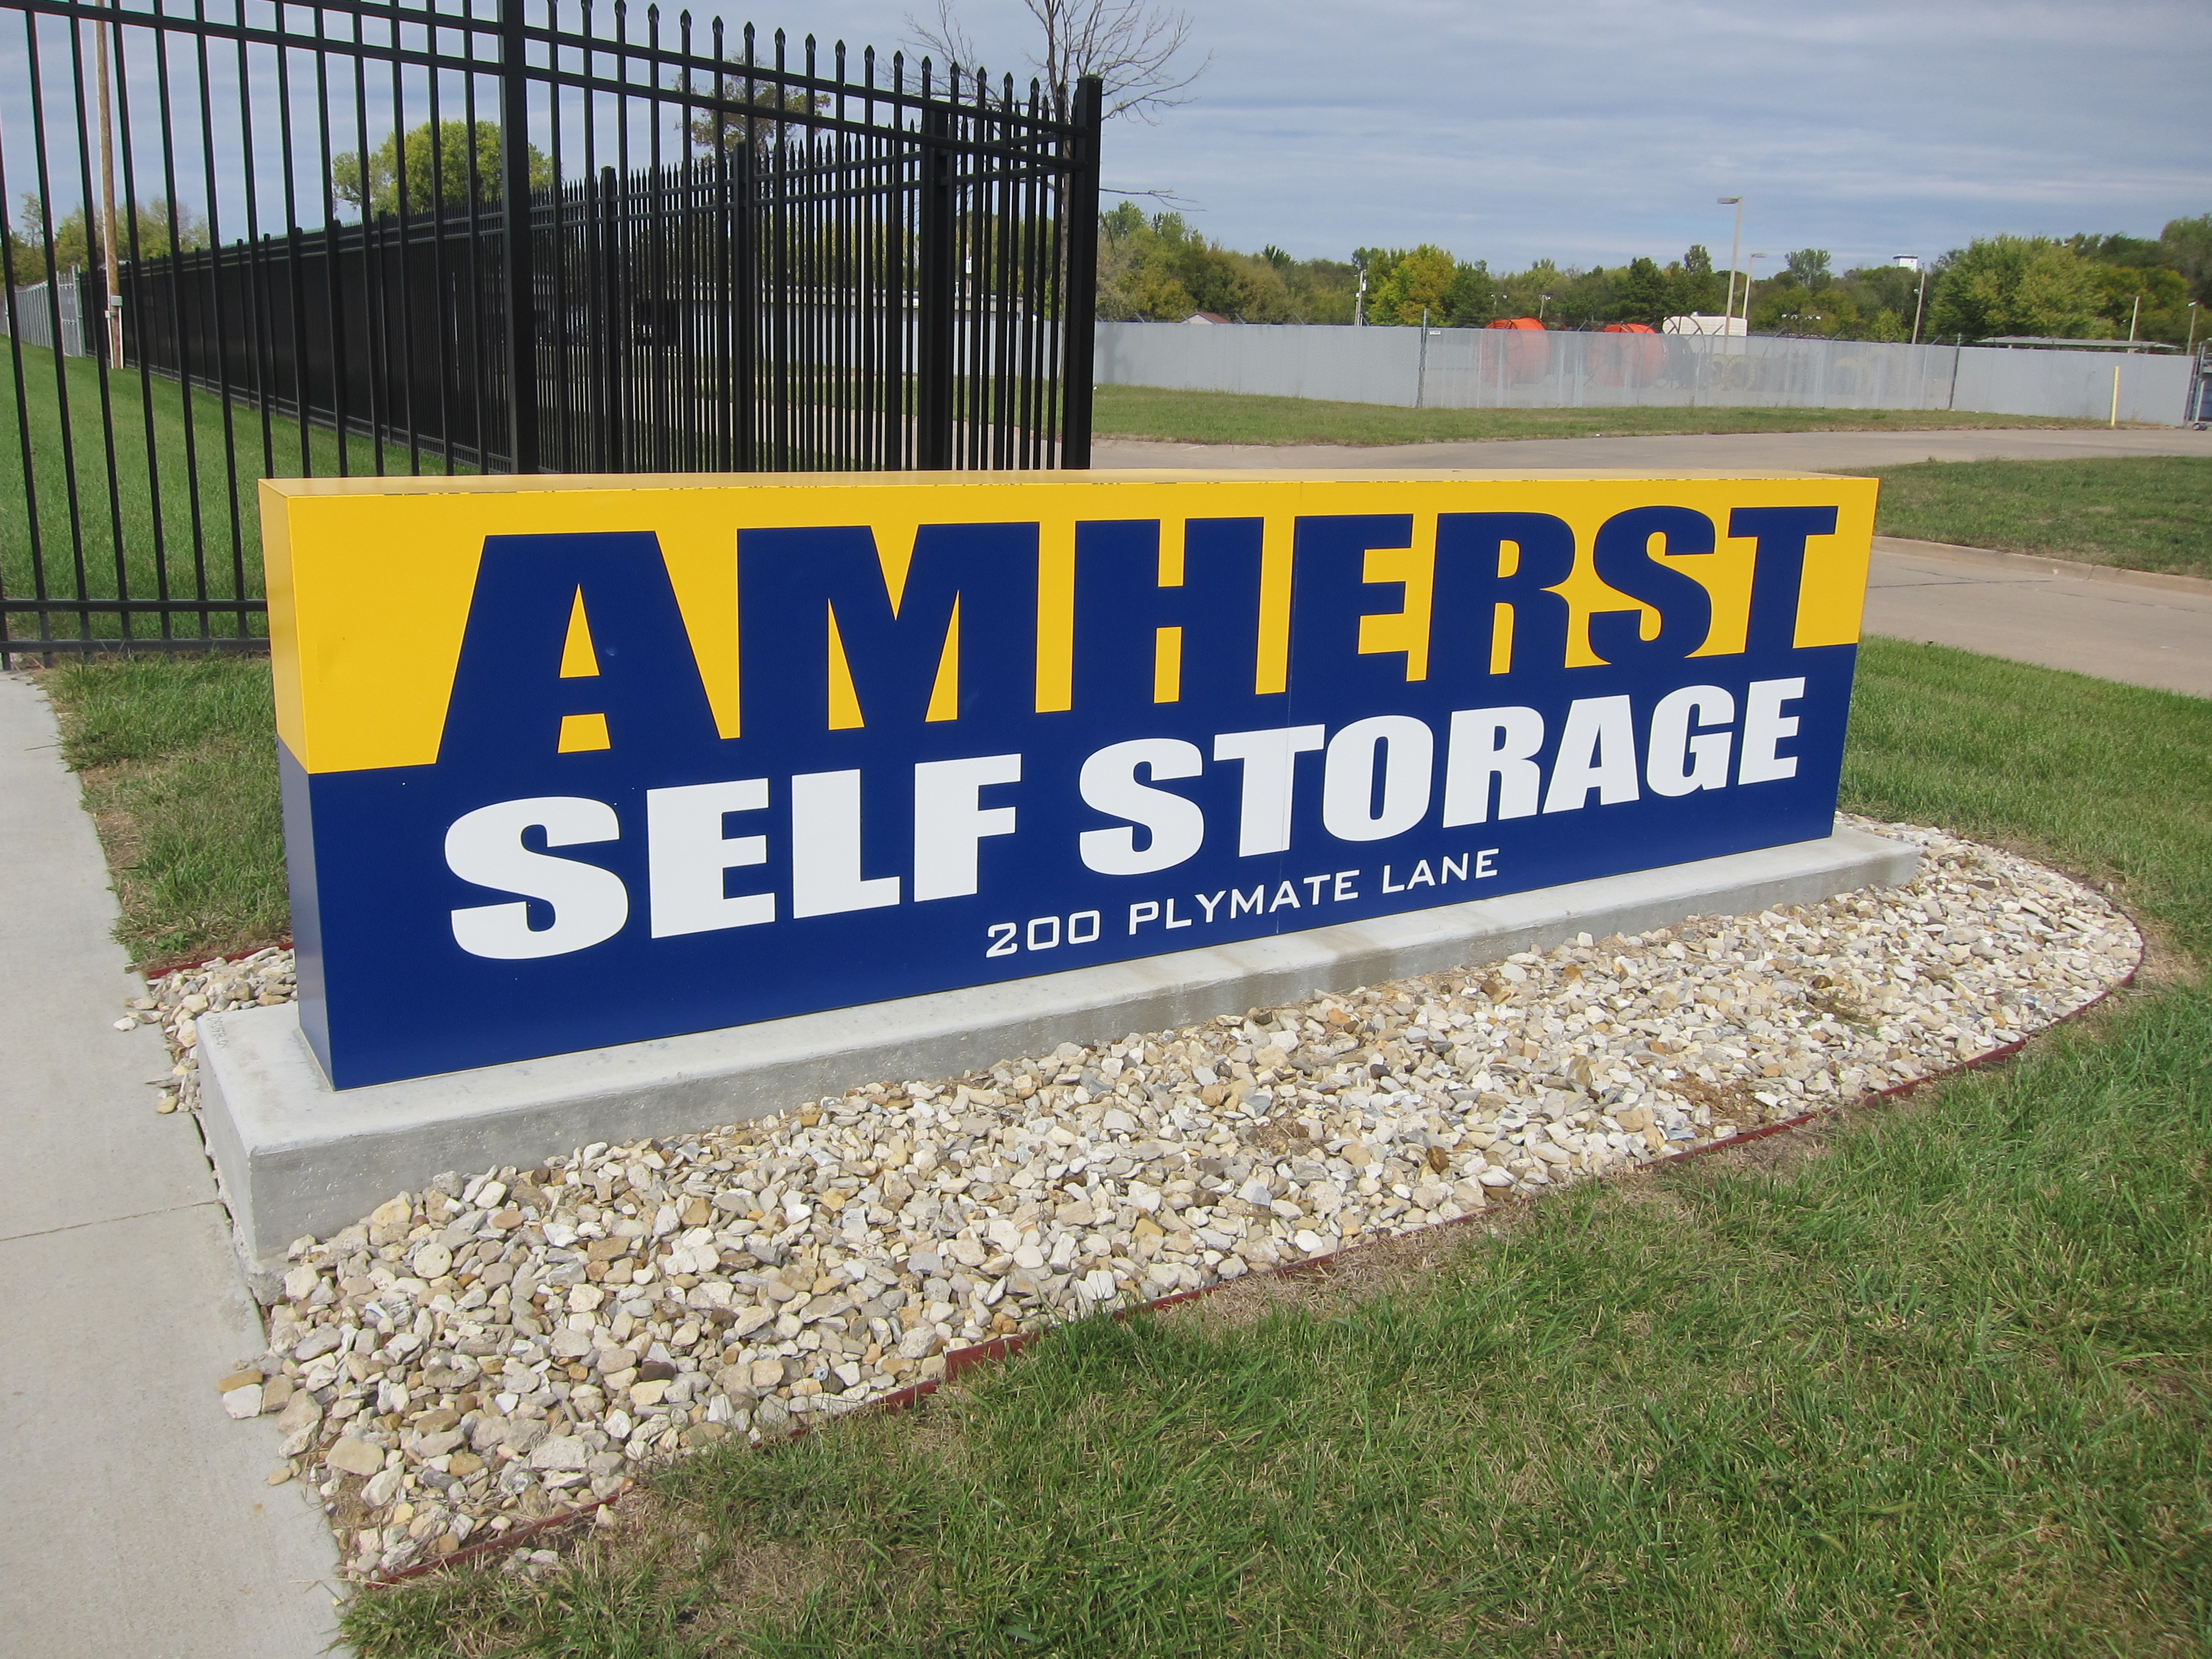 Amherst Self Storage in 200 Plymate Ln, Manhattan, KS 66502